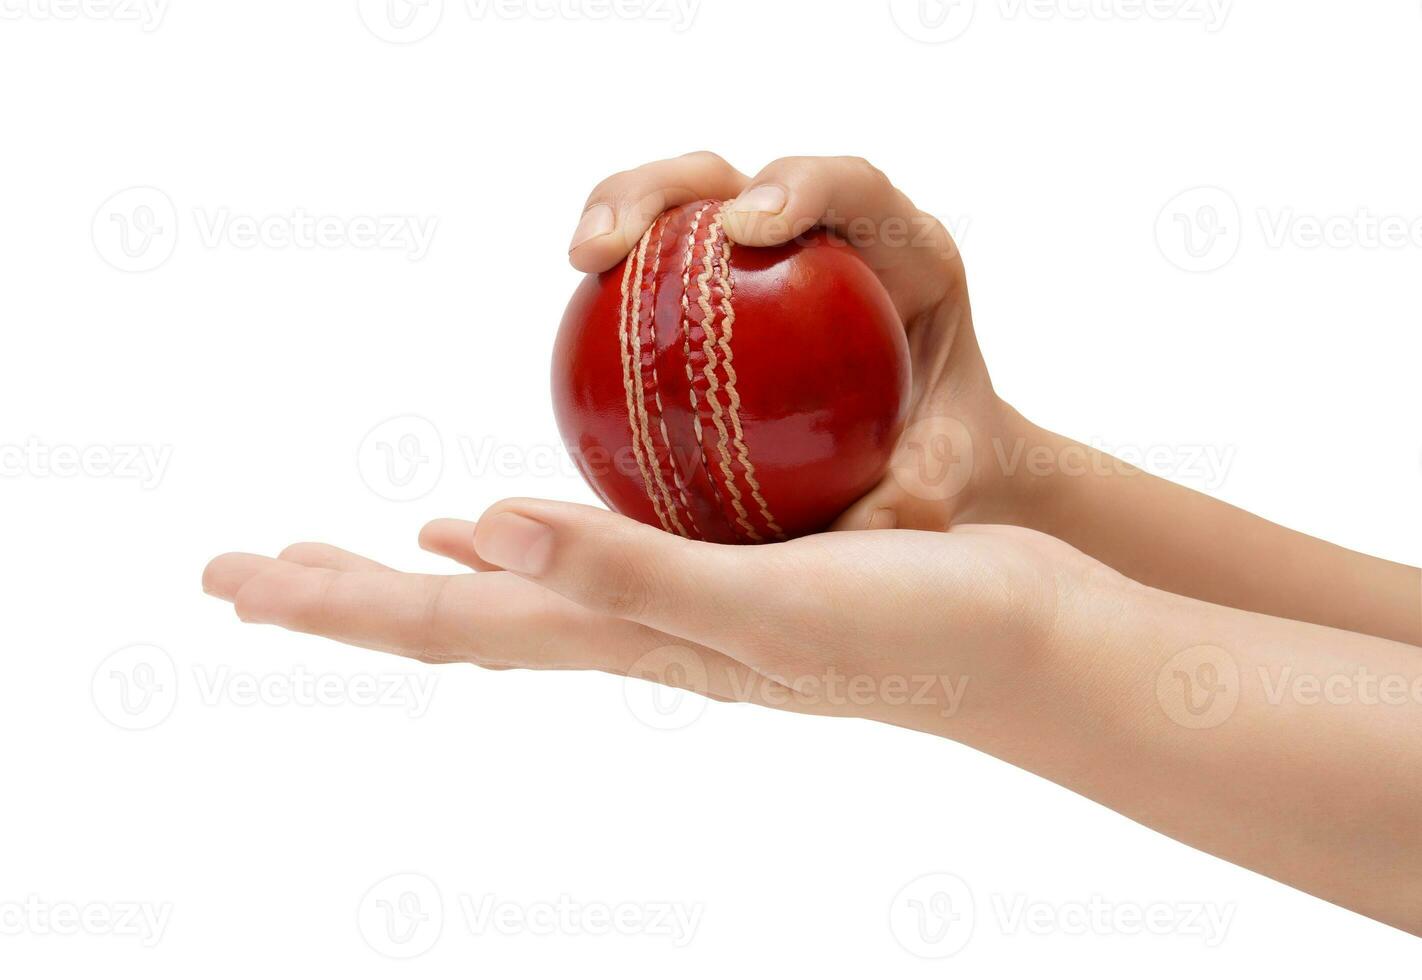 femmina giocatore di bowling presa per il rosso test cricket palla avvicinamento foto di femmina giocatore di cricket mano di per ciotola